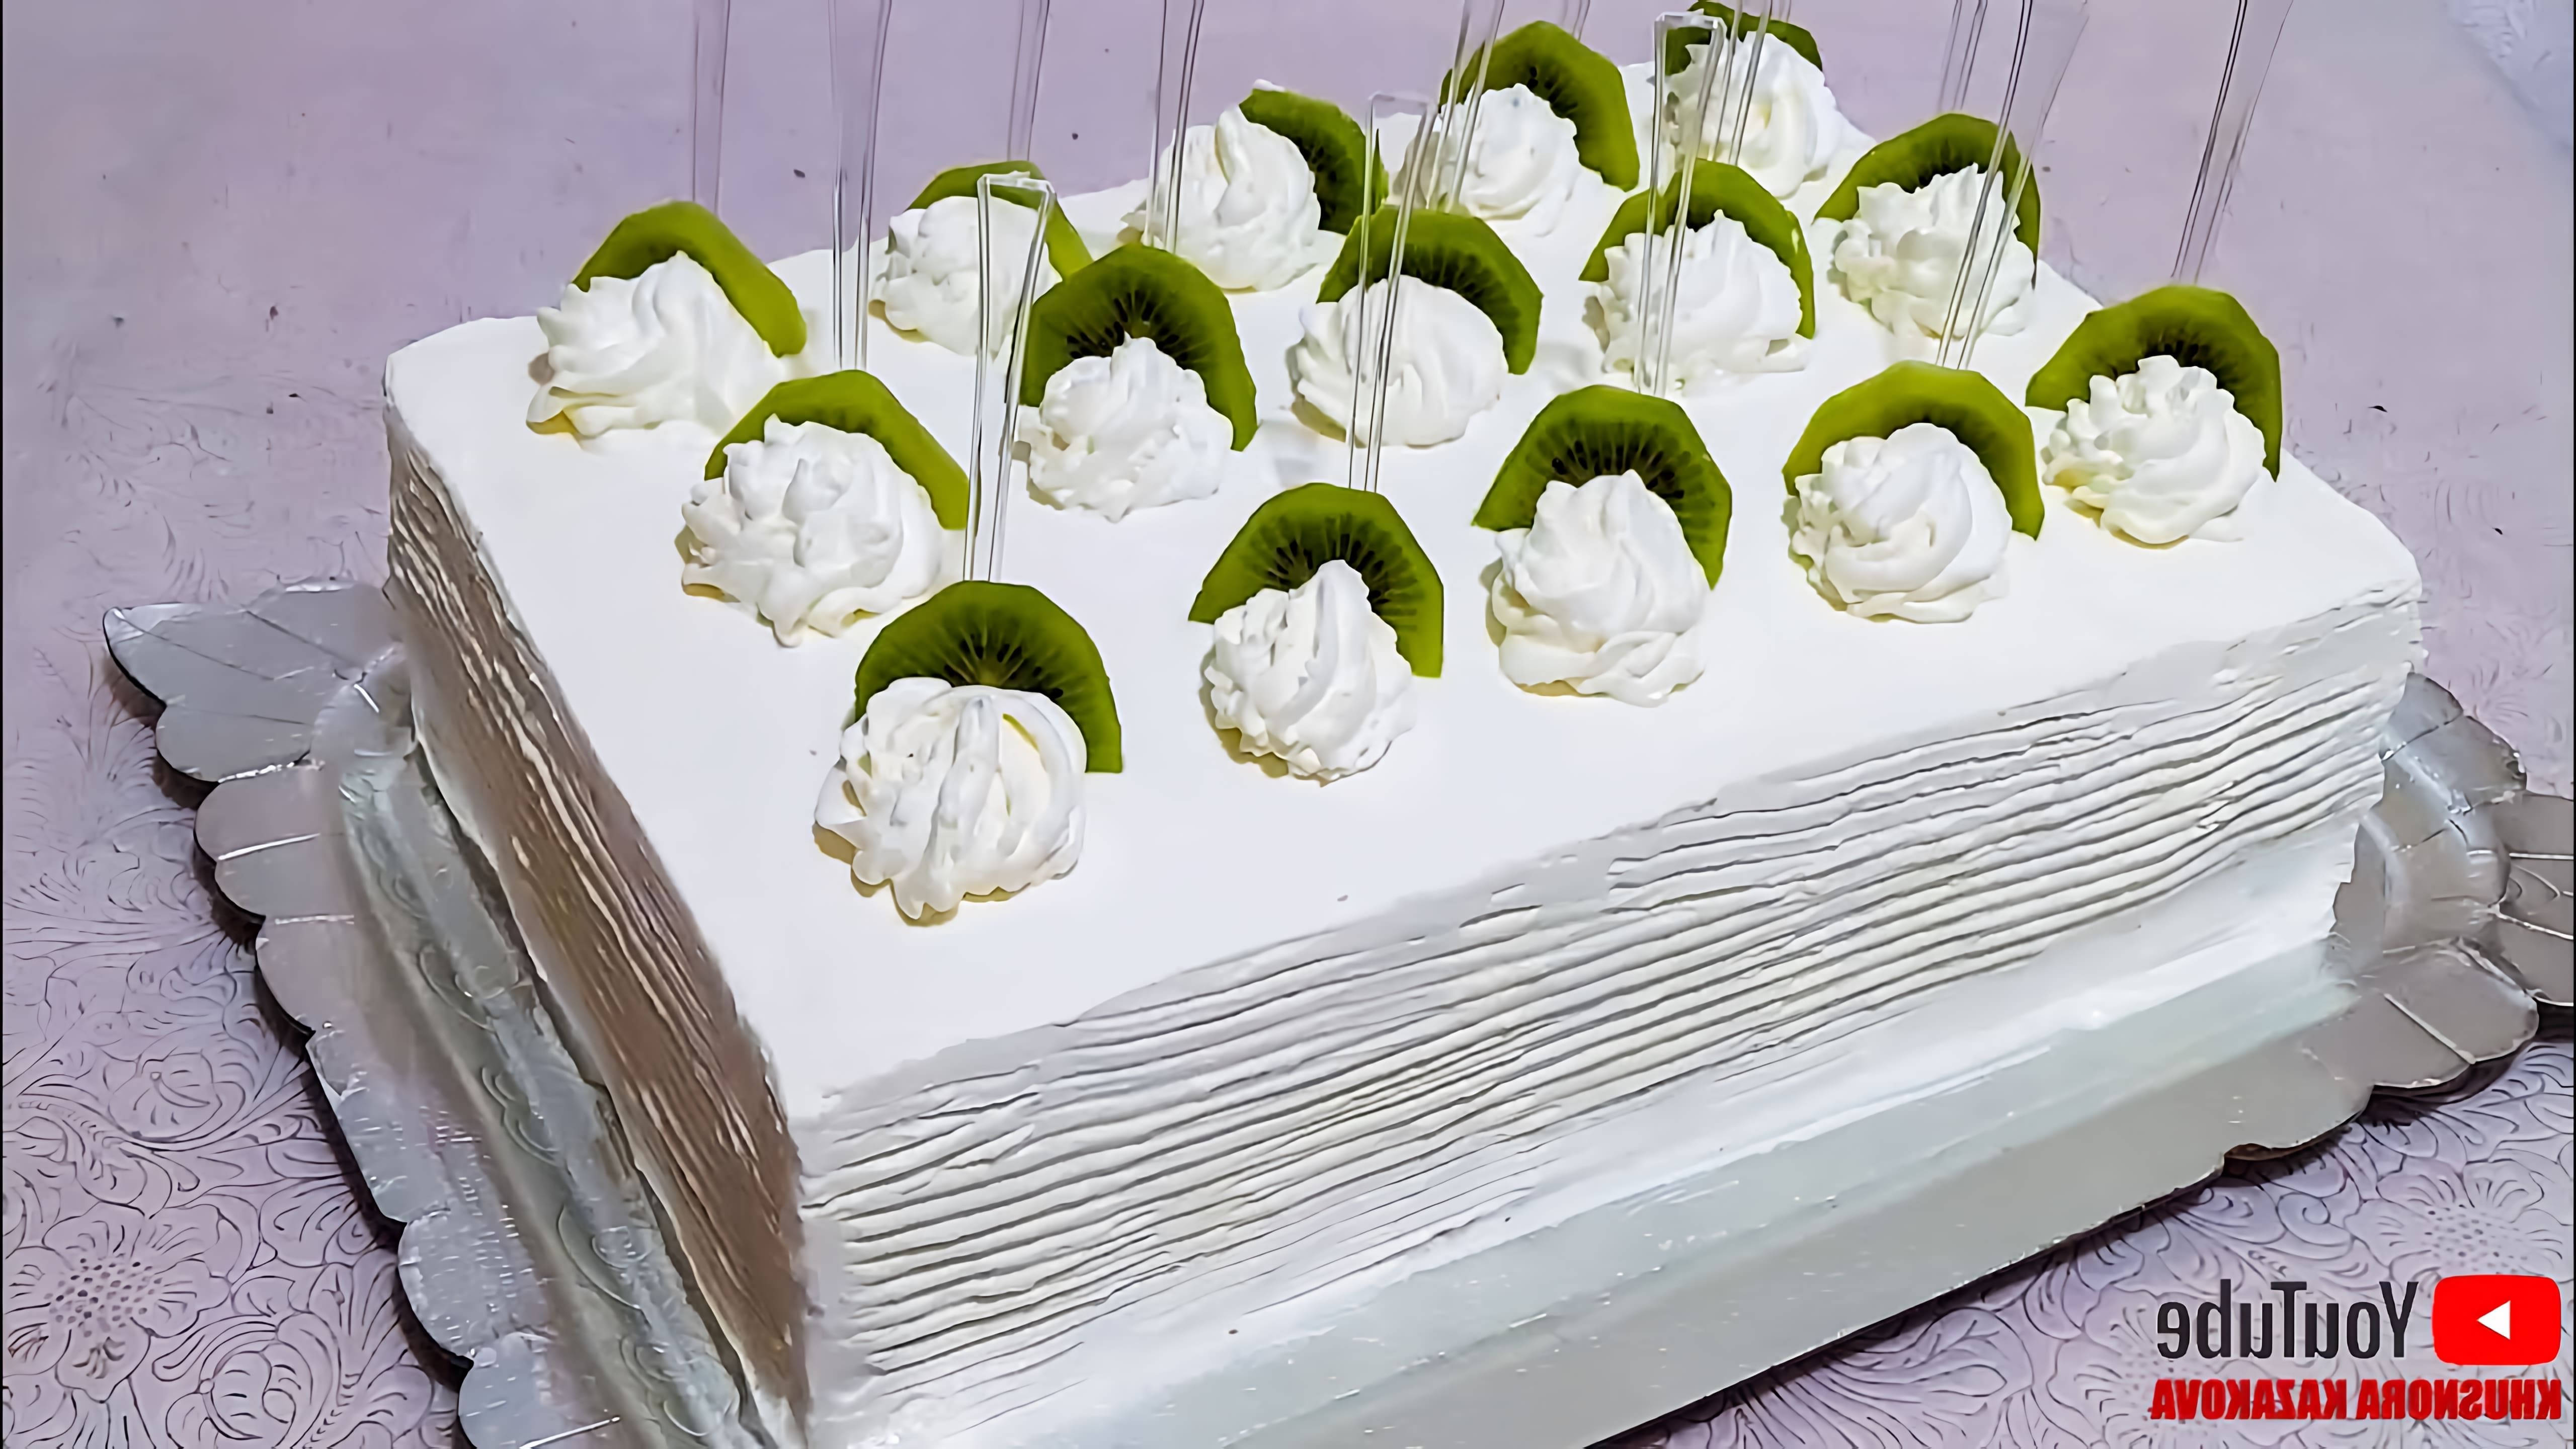 В этом видео демонстрируется процесс приготовления турецкого творожного торта